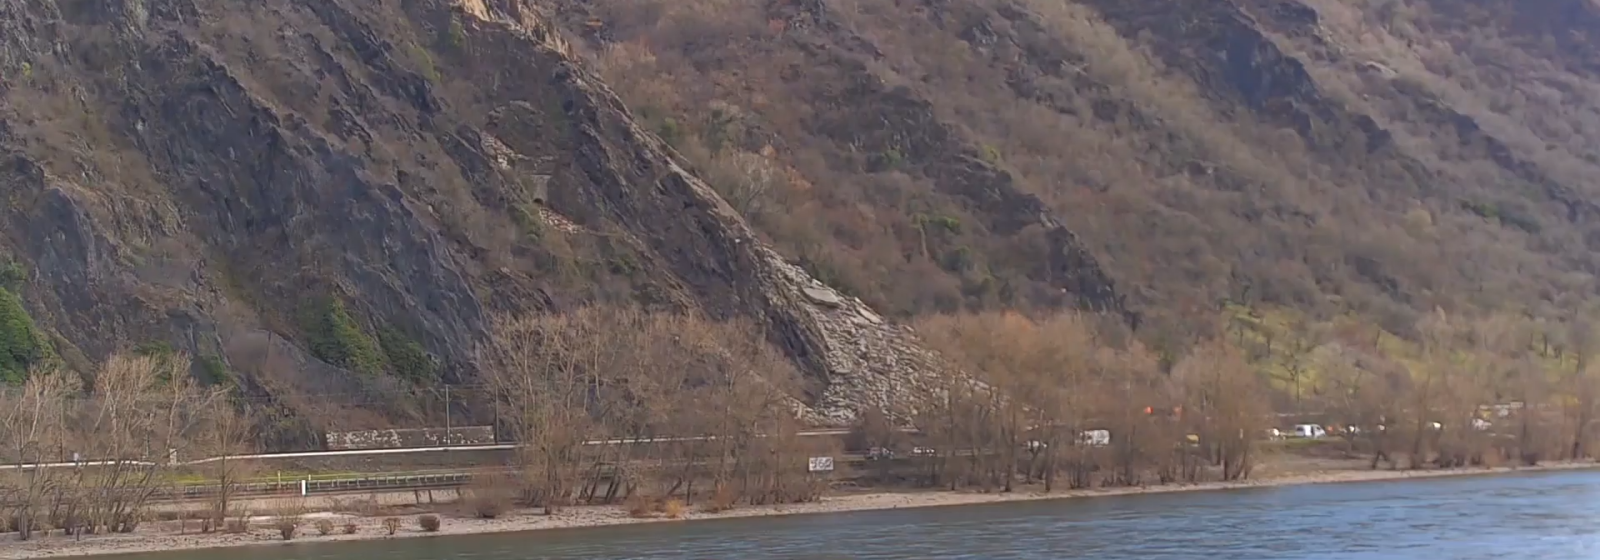 Een livecam filmde toevallig de grondverschuiving die op de spoorlijn terechtkwam